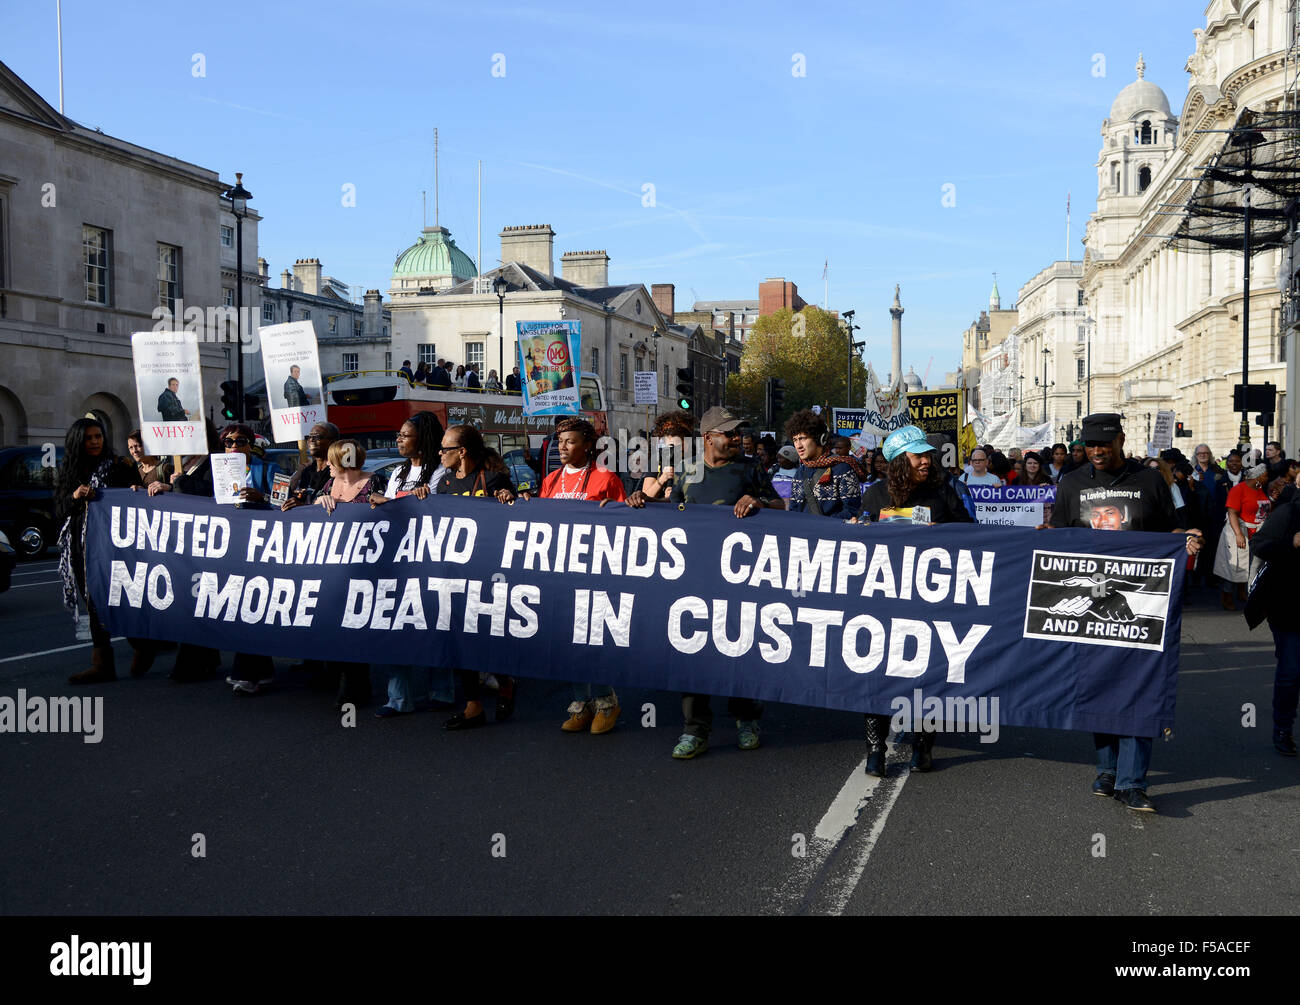 Campagne des familles et amis, plus d'un décès en garde à vue, de protestation à Downing Street, Londres, Angleterre, Royaume-Uni Banque D'Images